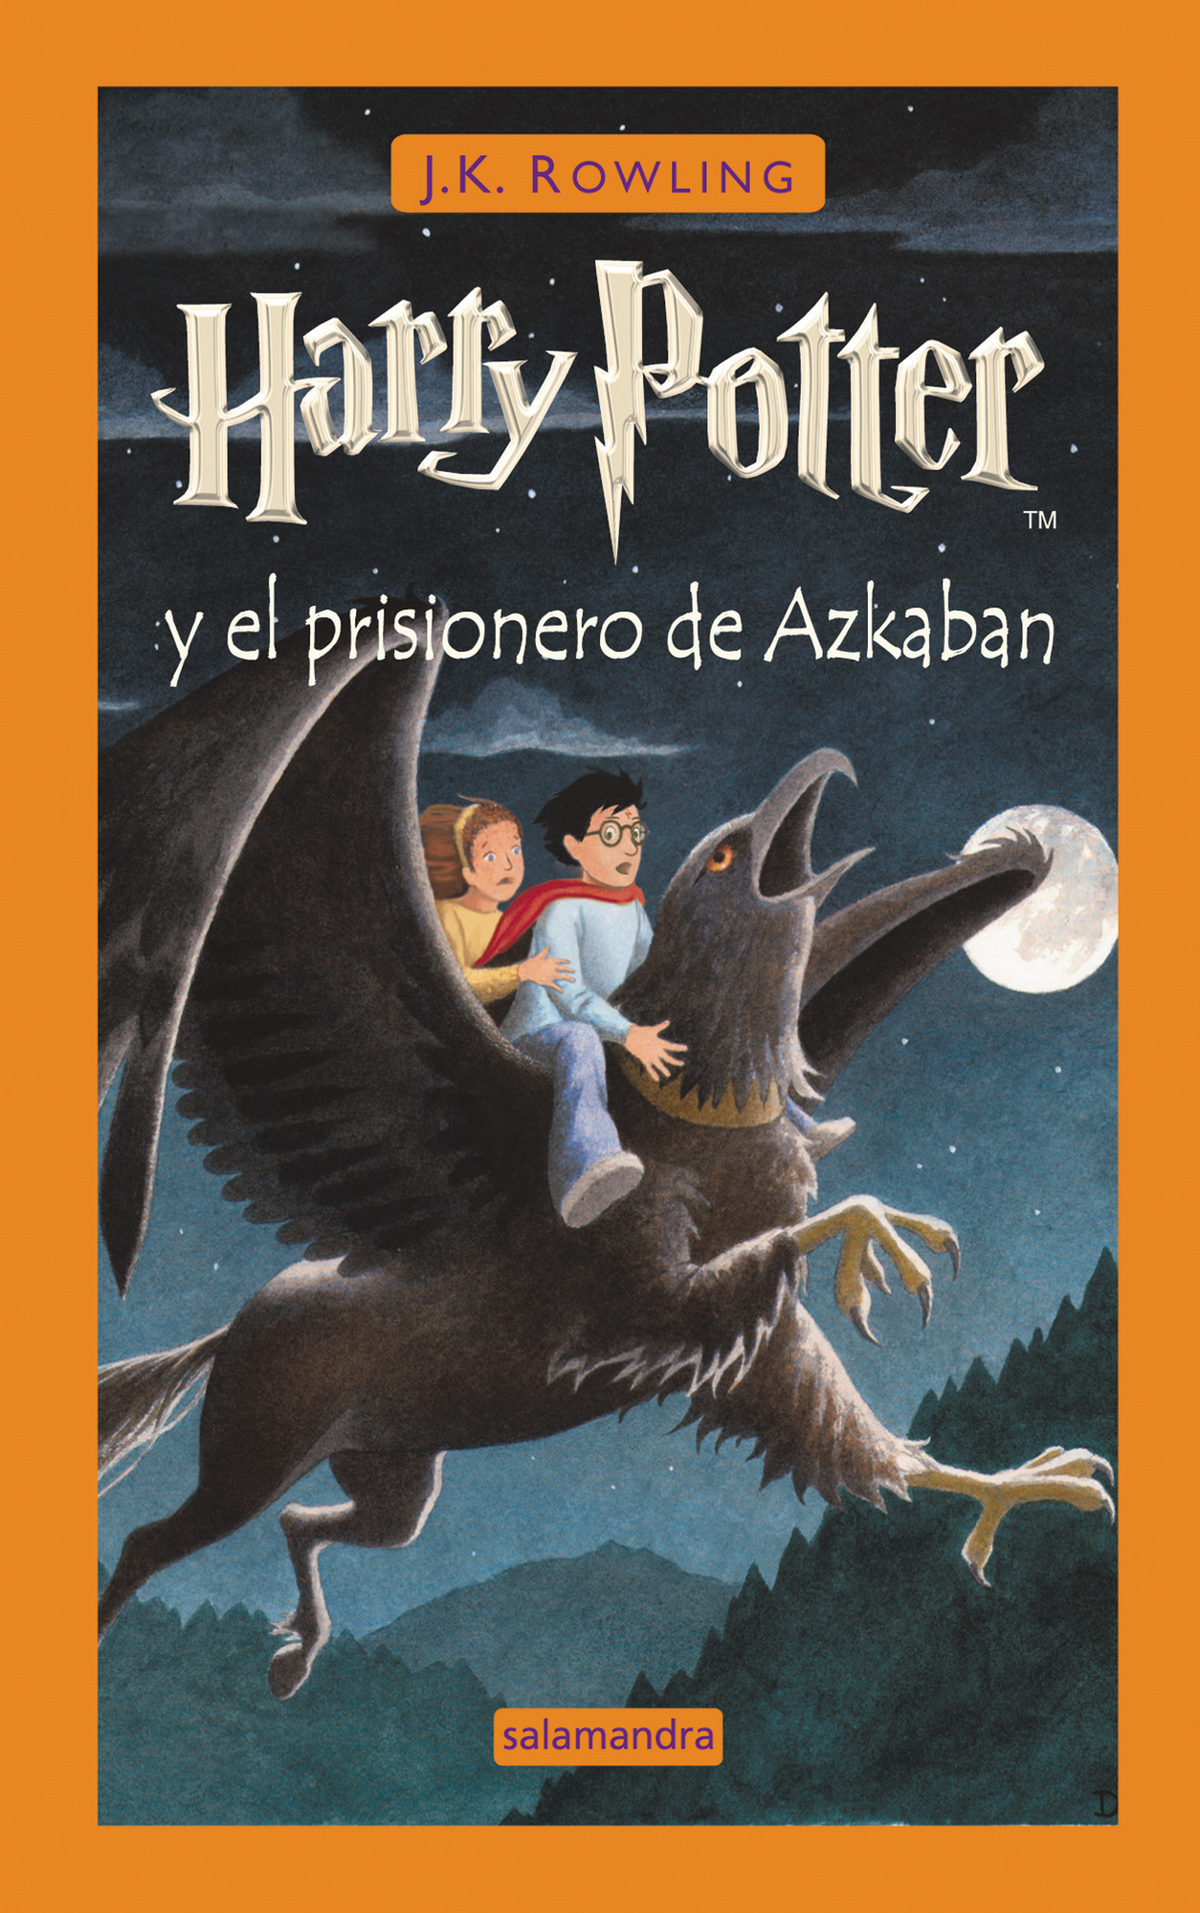 Harry Potter y el prisionero de Azkaban, Harry Potter Wiki